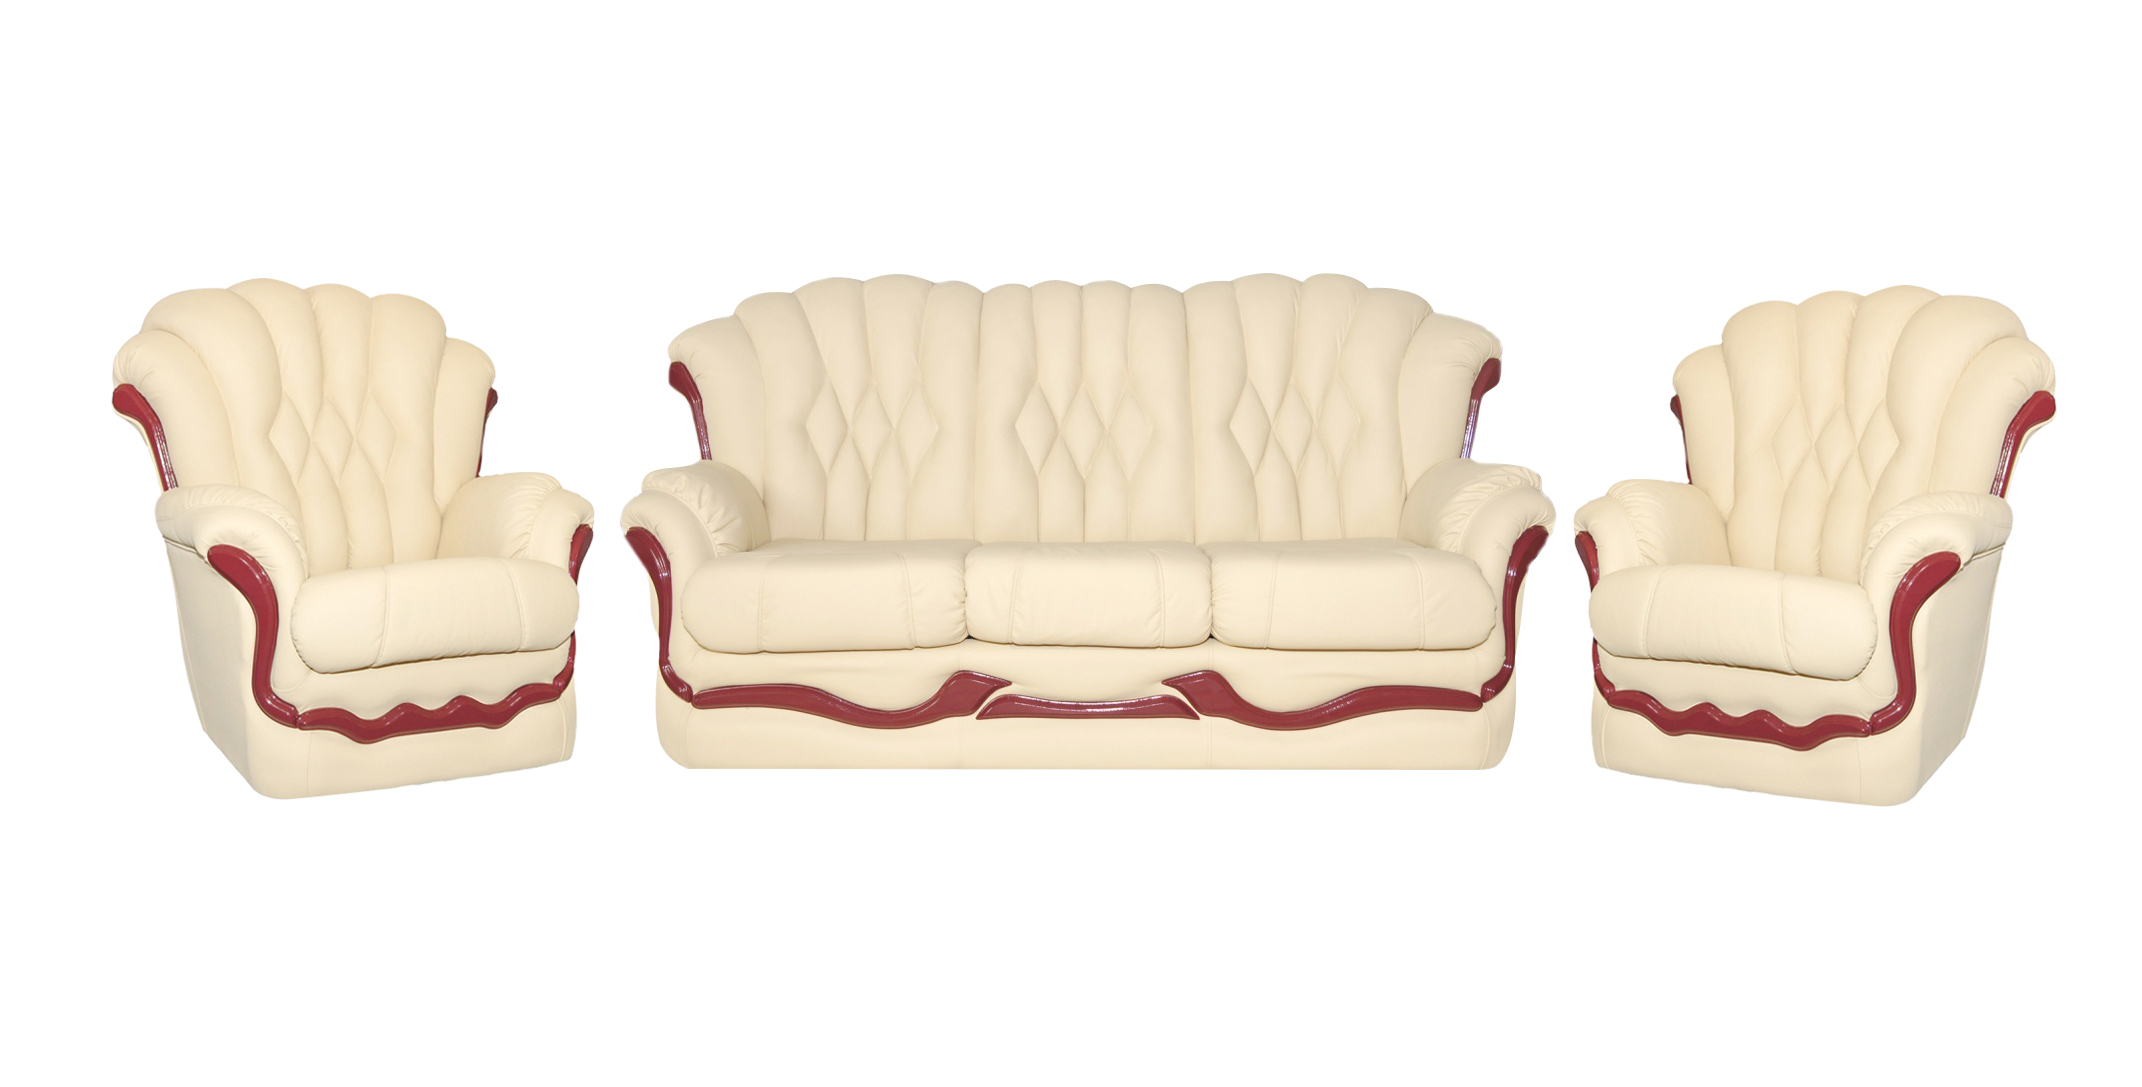 Наборы мебели диван 2 кресла. Комплект мягкой мебели (диван и кресло) модель «Форест». Комплект (софа + 2 кресла) Cezar. Мягкая мебель Пронто-3 диван 2 кресла. Комплект мягкой мебели lb 2037l "Dirty ОАК".